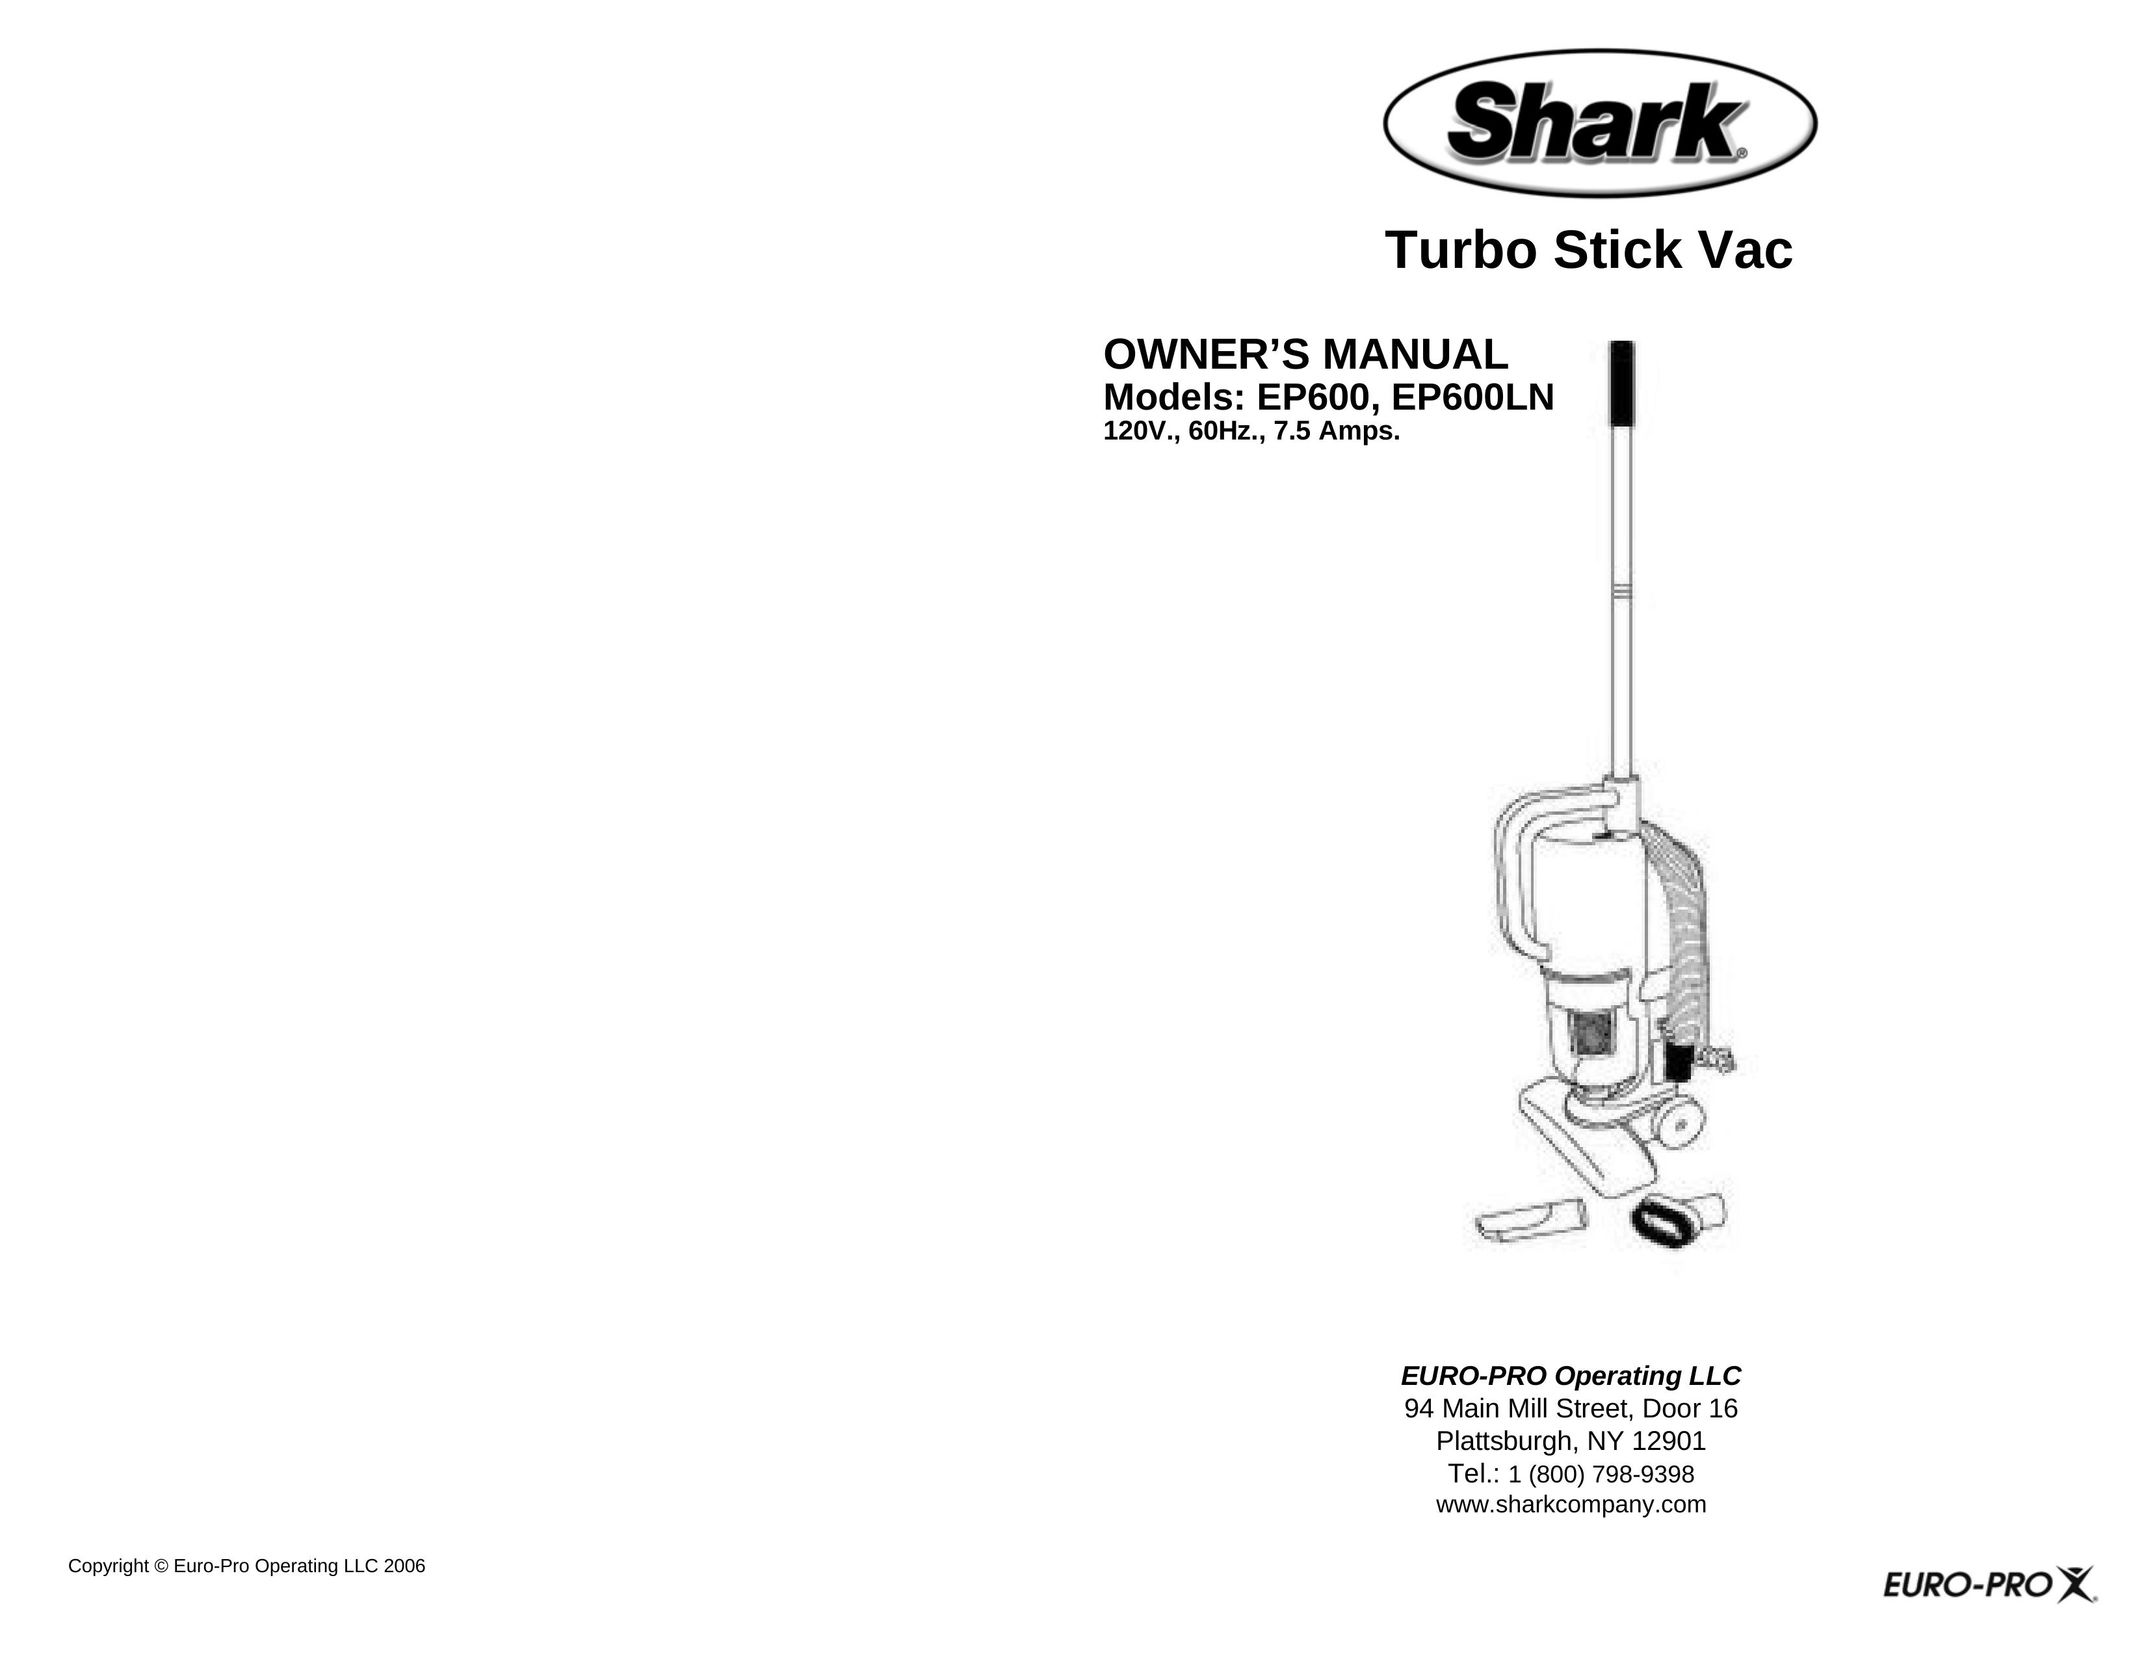 Shark EP600 Vacuum Cleaner User Manual